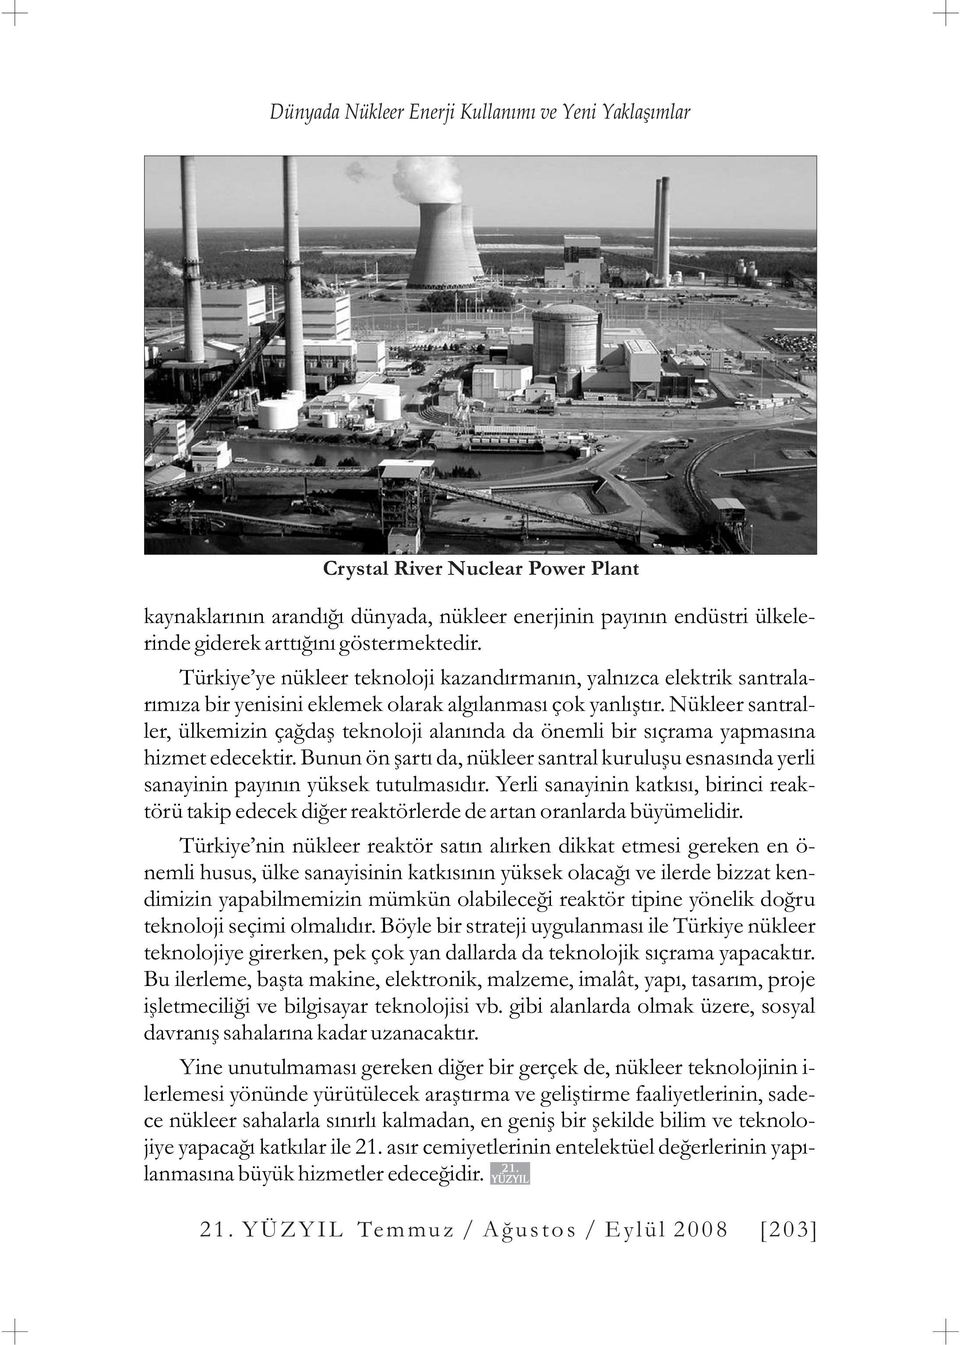 Nükleer santraller, ülkemizin çaðdaþ teknoloji alanýnda da önemli bir sýçrama yapmasýna hizmet edecektir.